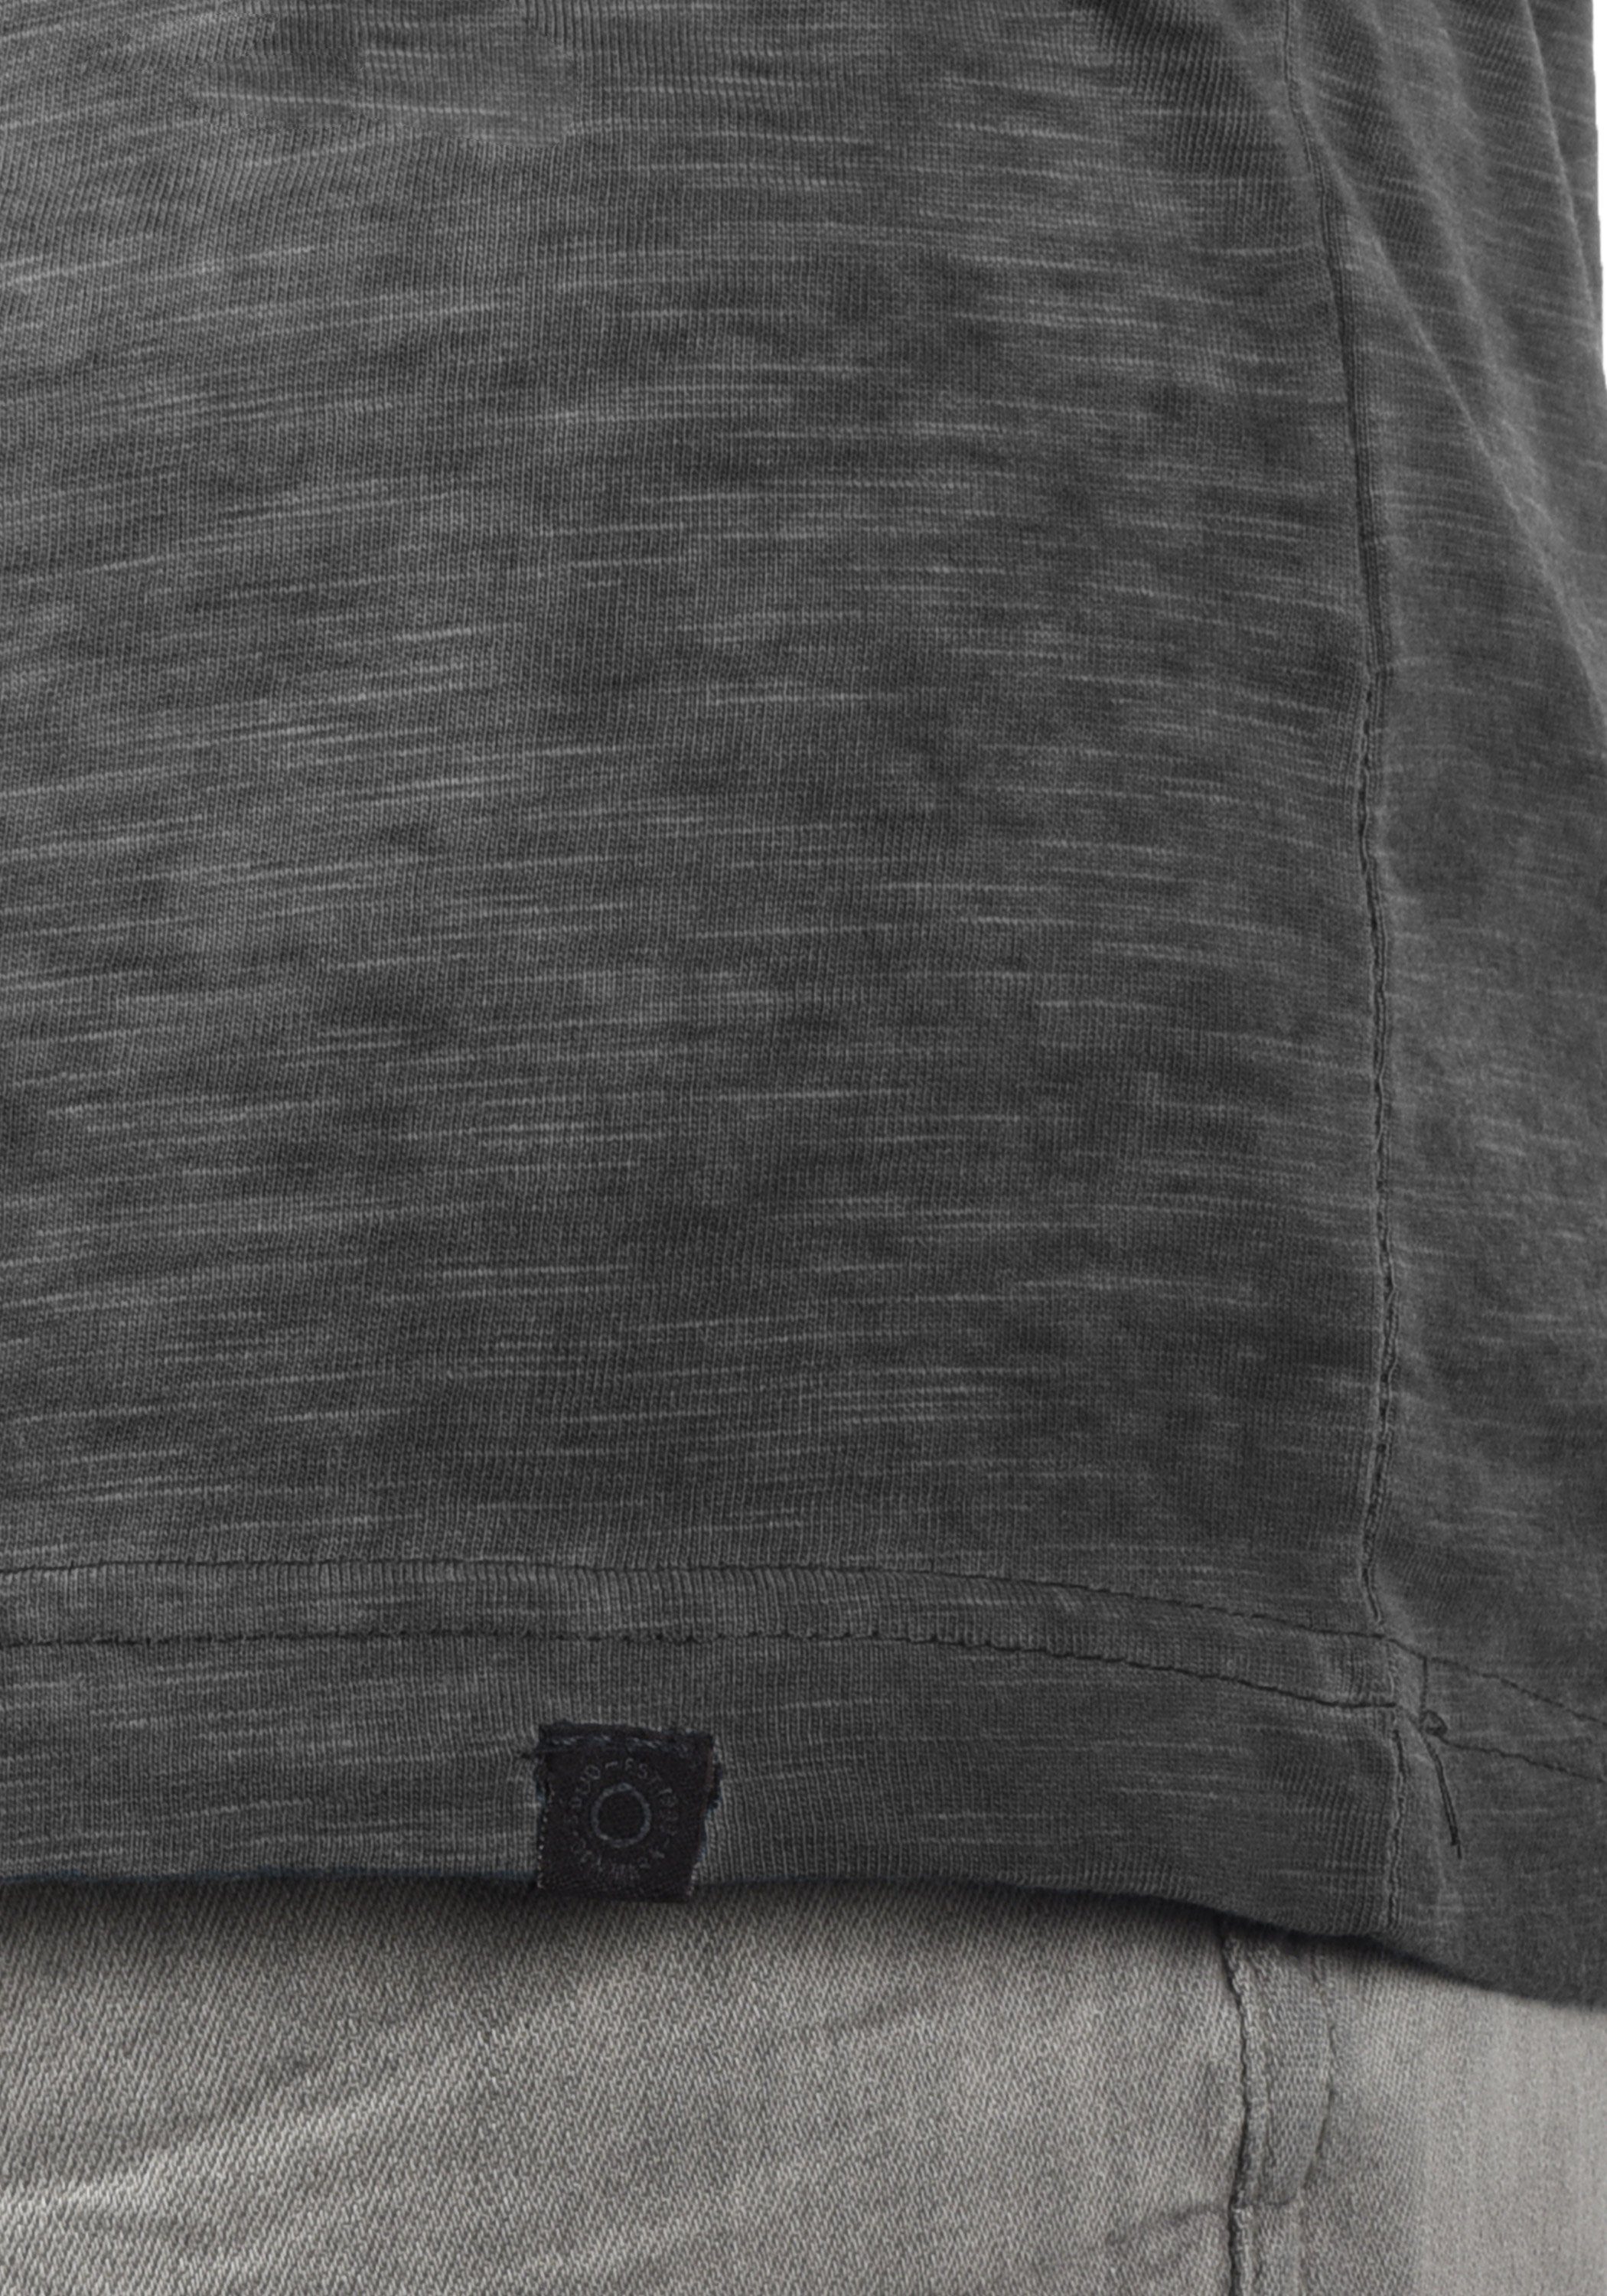 mit (9000) T-Shirt V-Ausschnitt T-Shirt SDConley Black !Solid